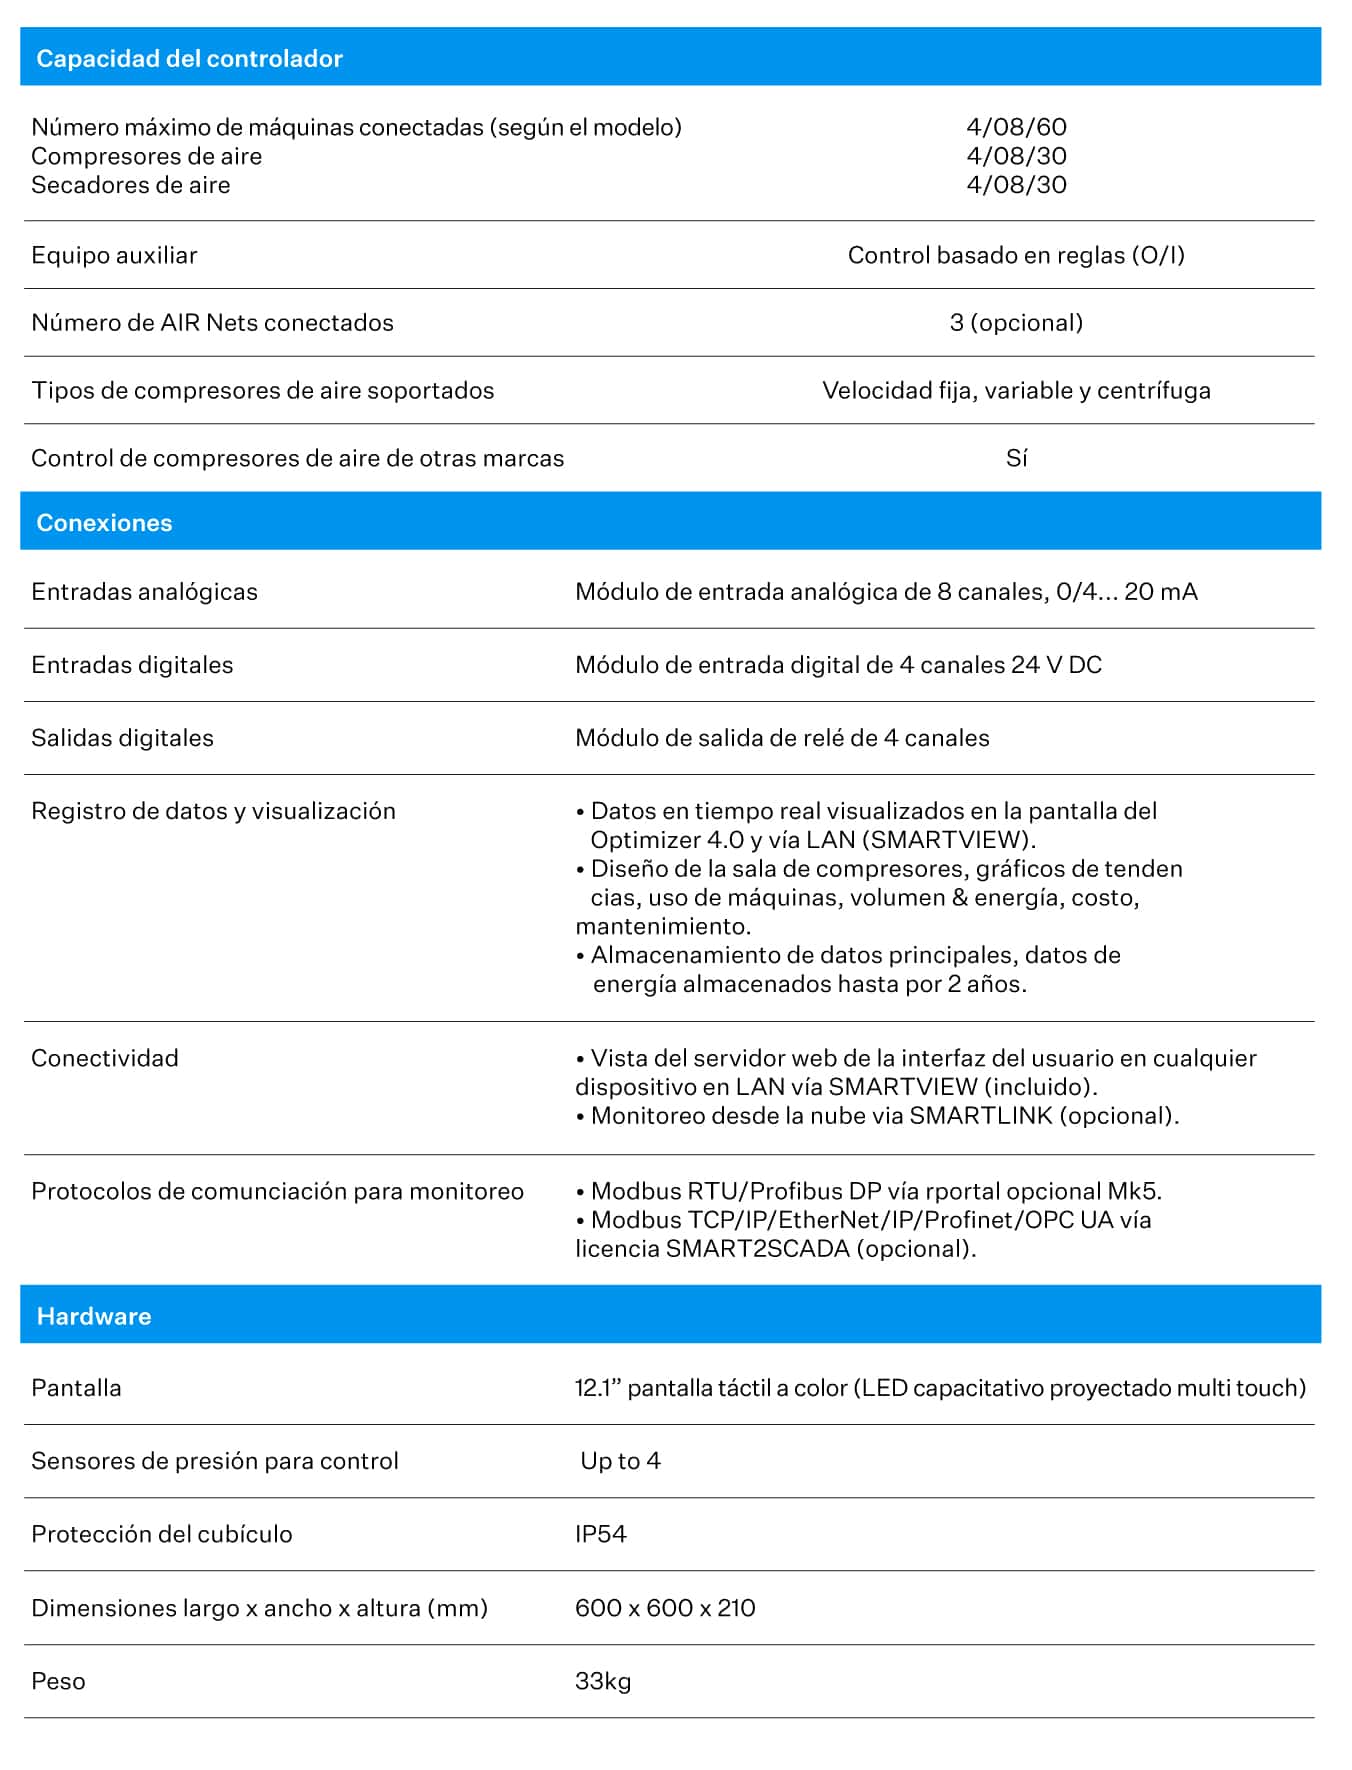 MR-Peru-Especificaciones-Optimizer-Caracteristicas-Atlas-Copco